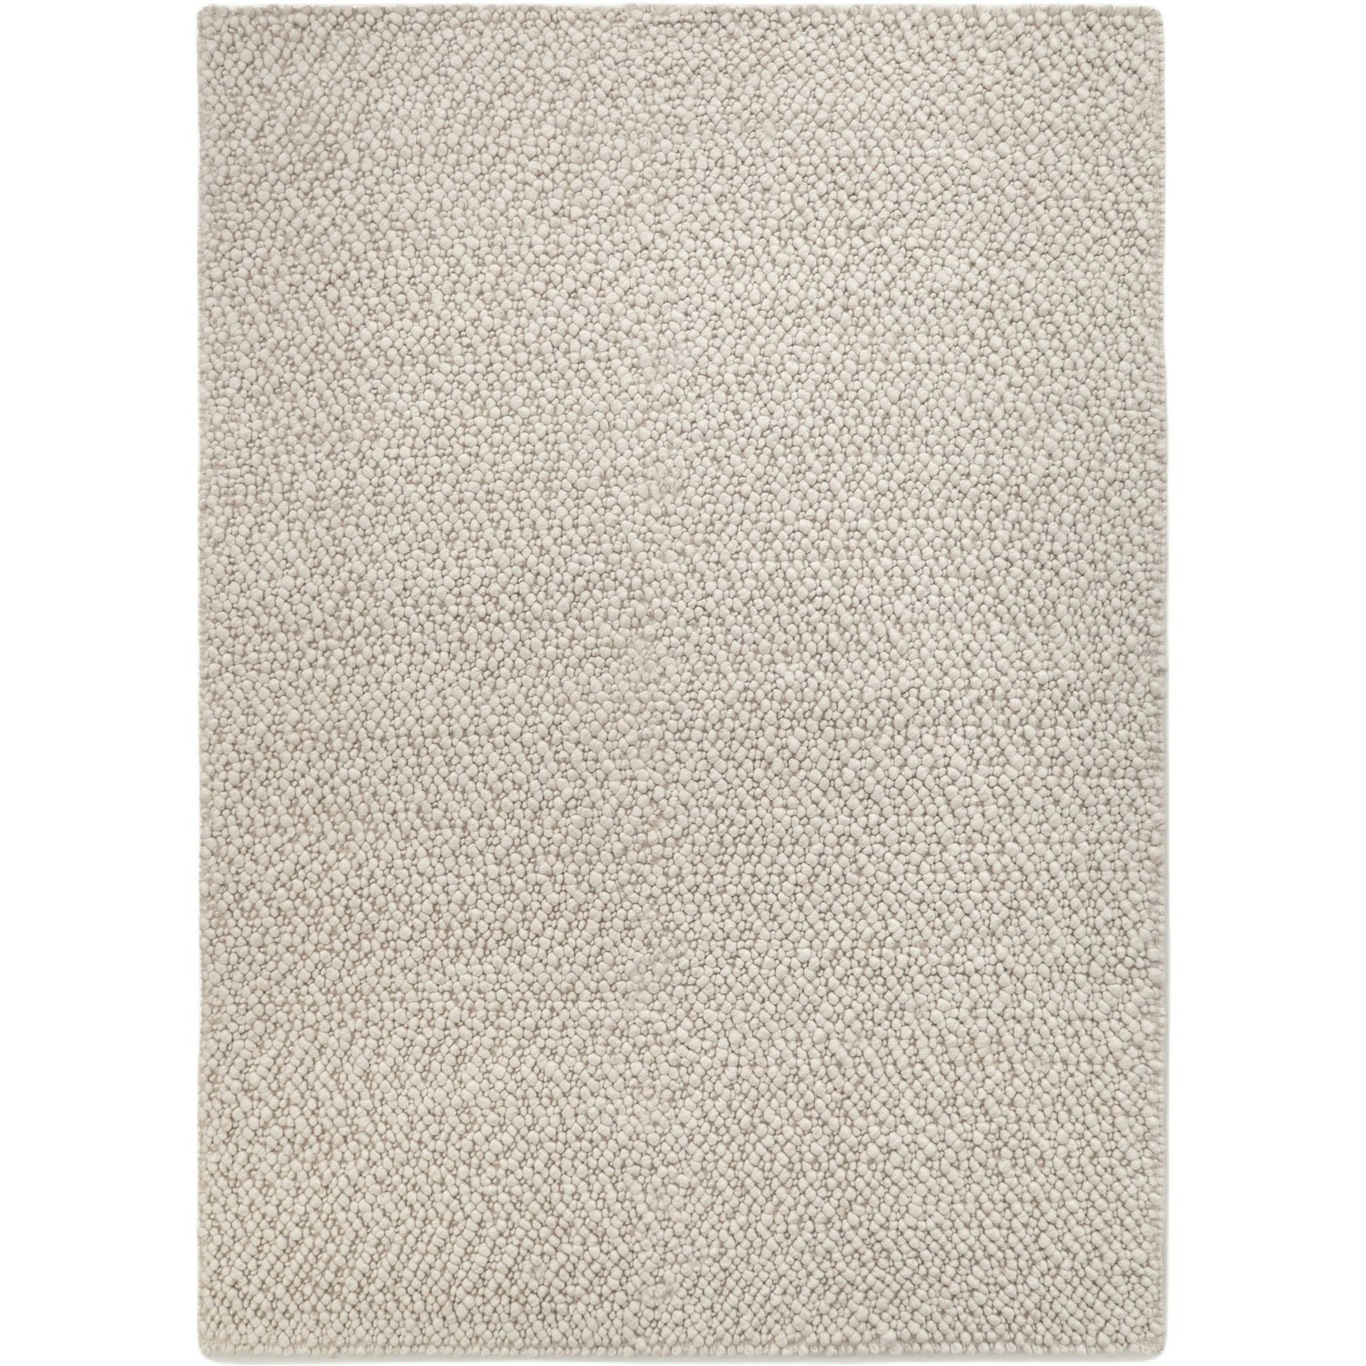 Andersdotter Wollen Vloerkleed, 170x240 cm